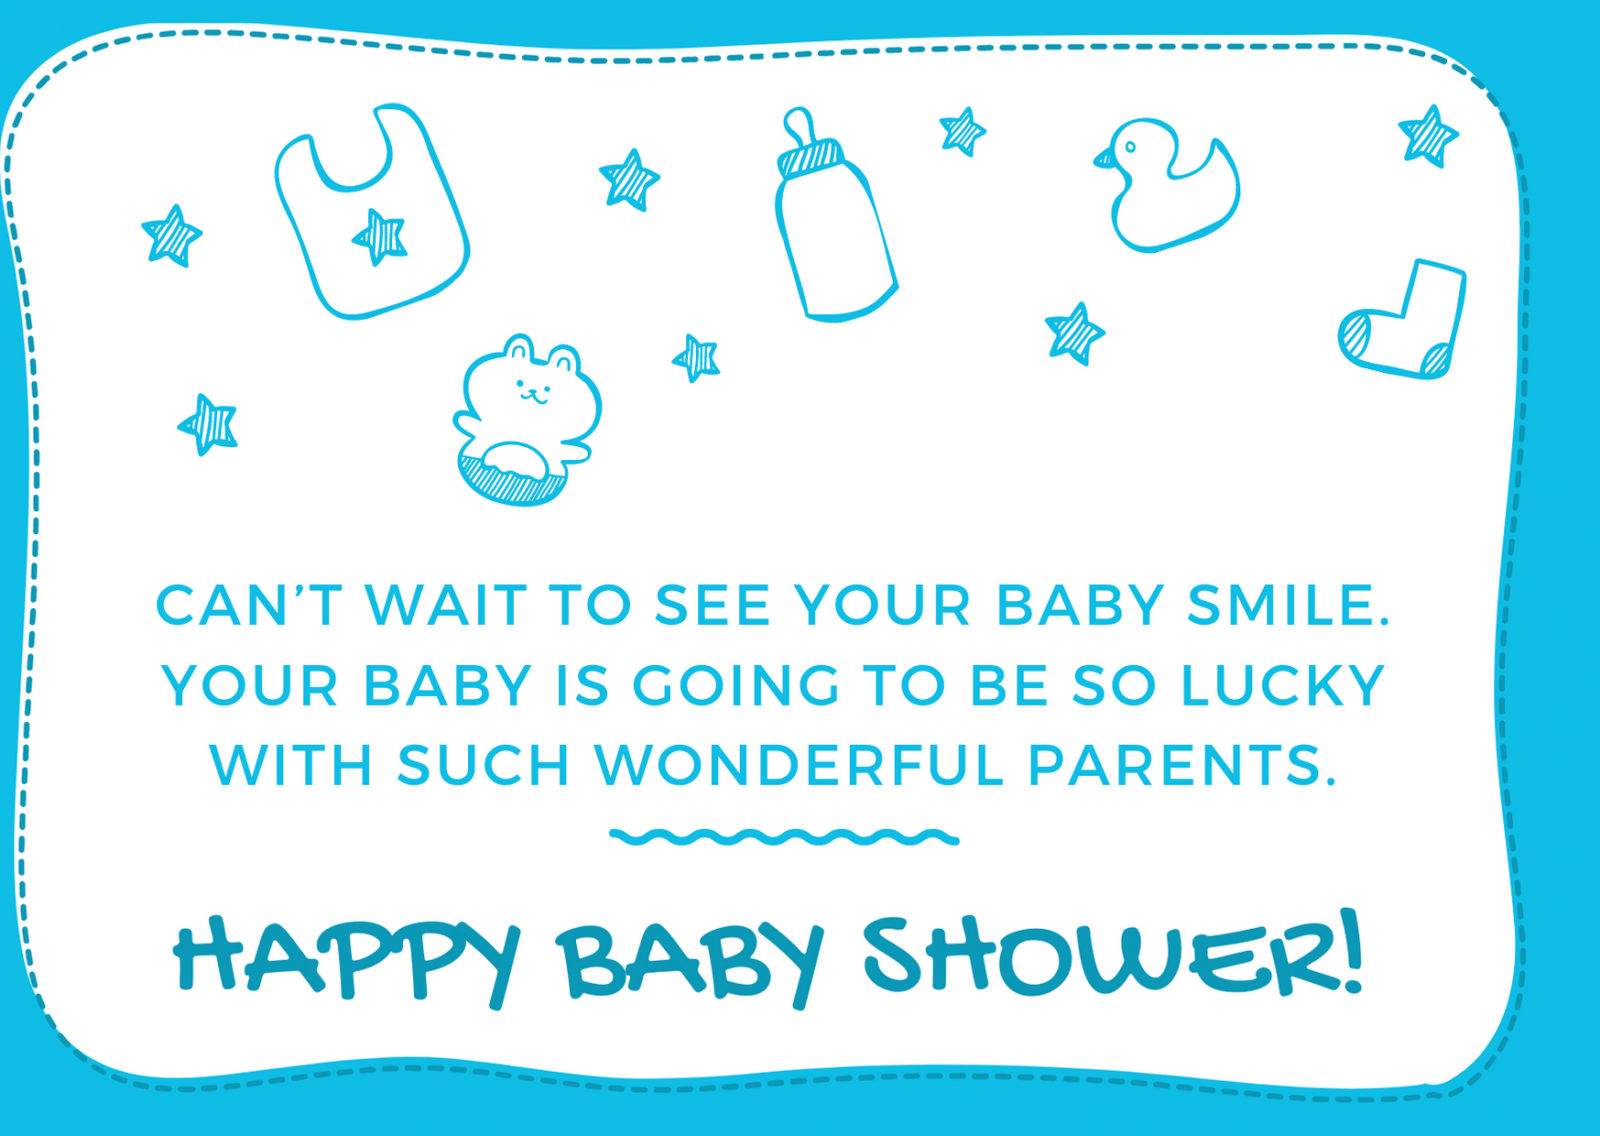 baby shower warm wishes